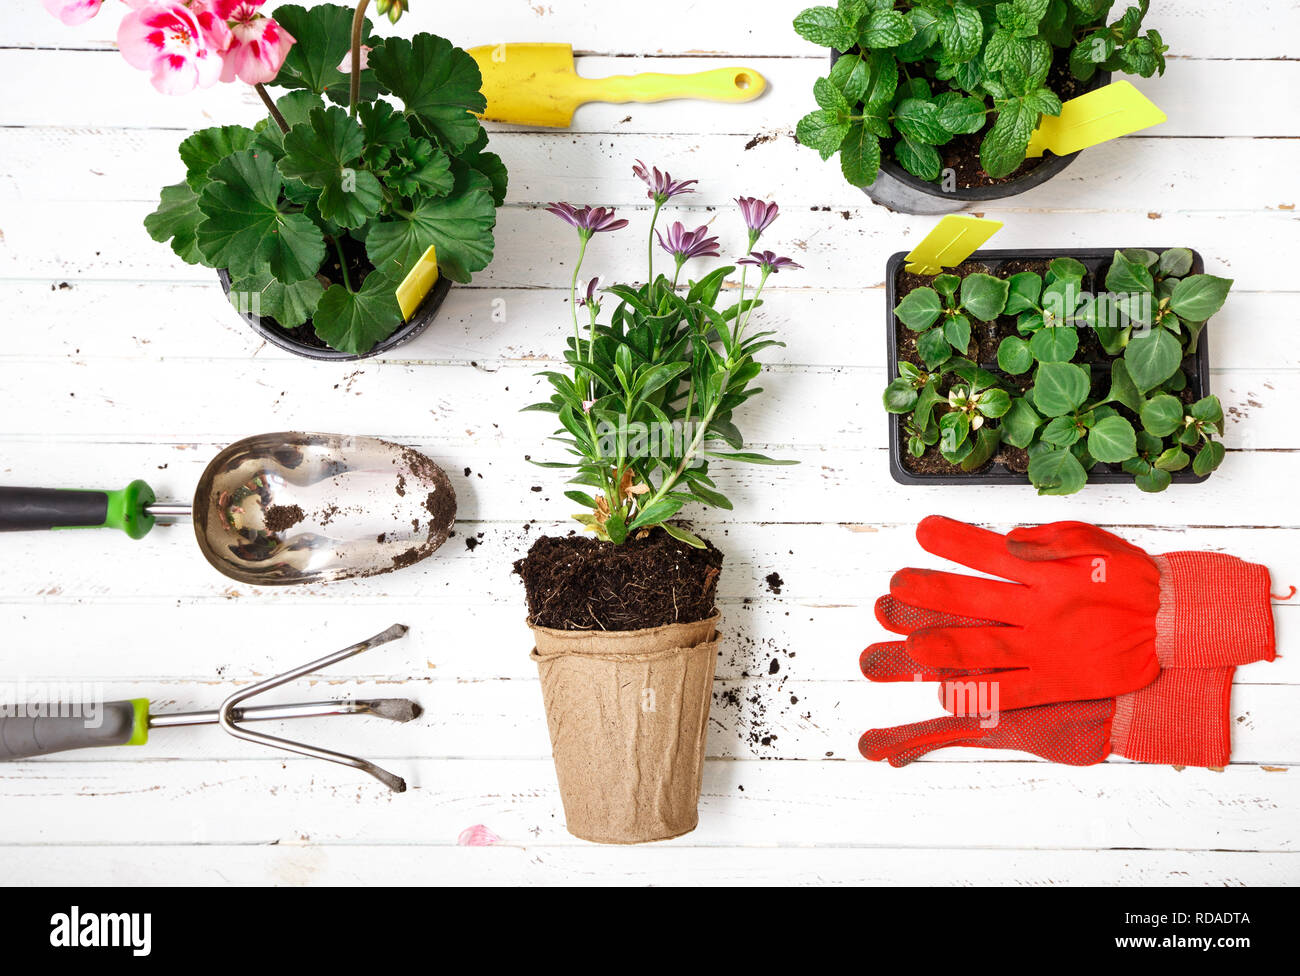 Attrezzi per giardinaggio, guanti e fiori in vaso per la semina in cortile, la manutenzione del giardino e il concetto di hobby. Foto Stock